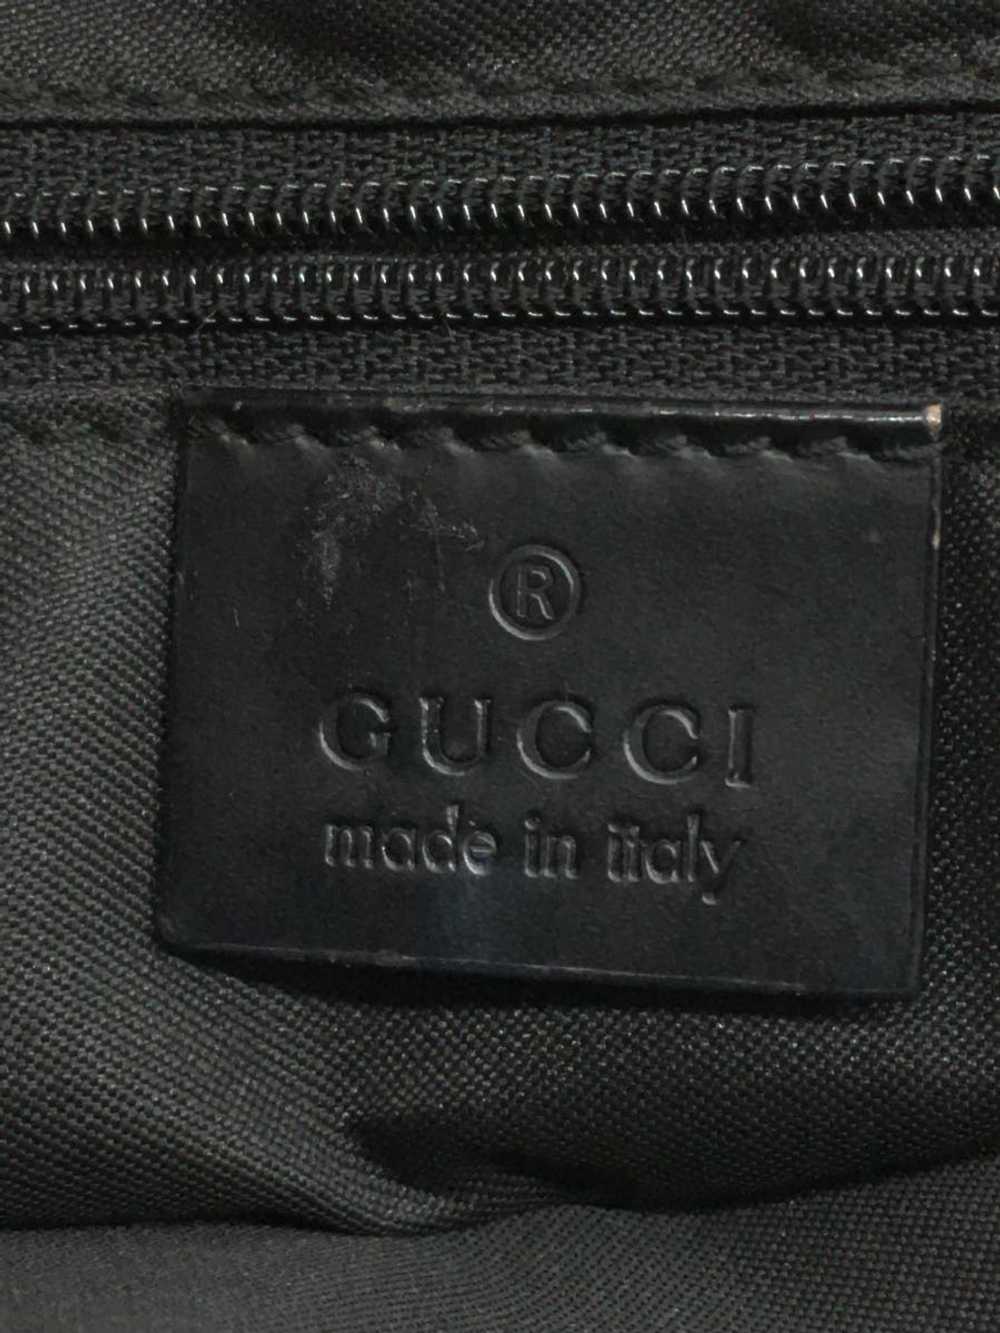 Used Gucci Gg Canvas/Bamboo Tote/Handbag Old Bamb… - image 5